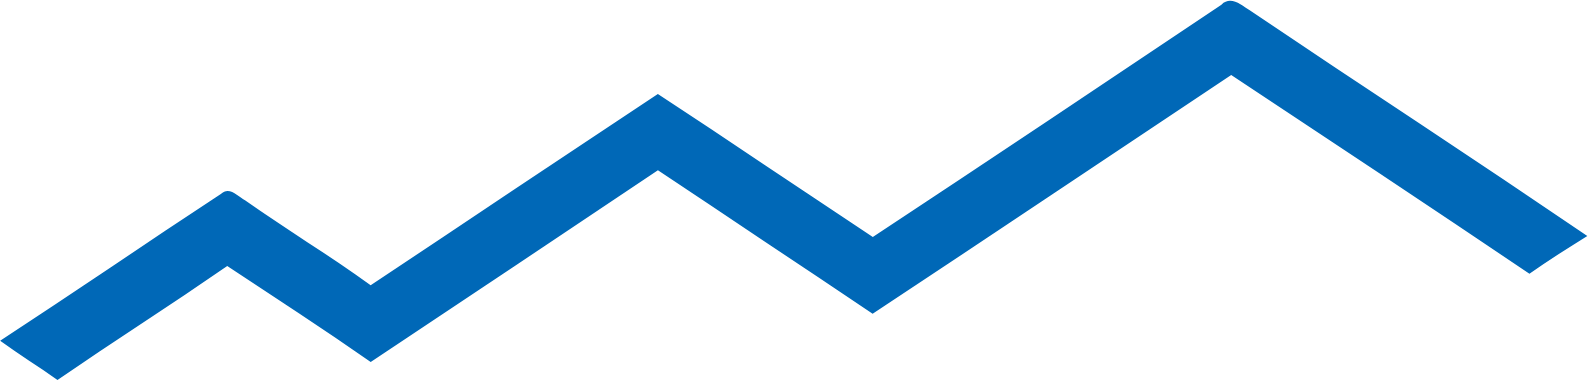 Kunlun Tech logo (PNG transparent)